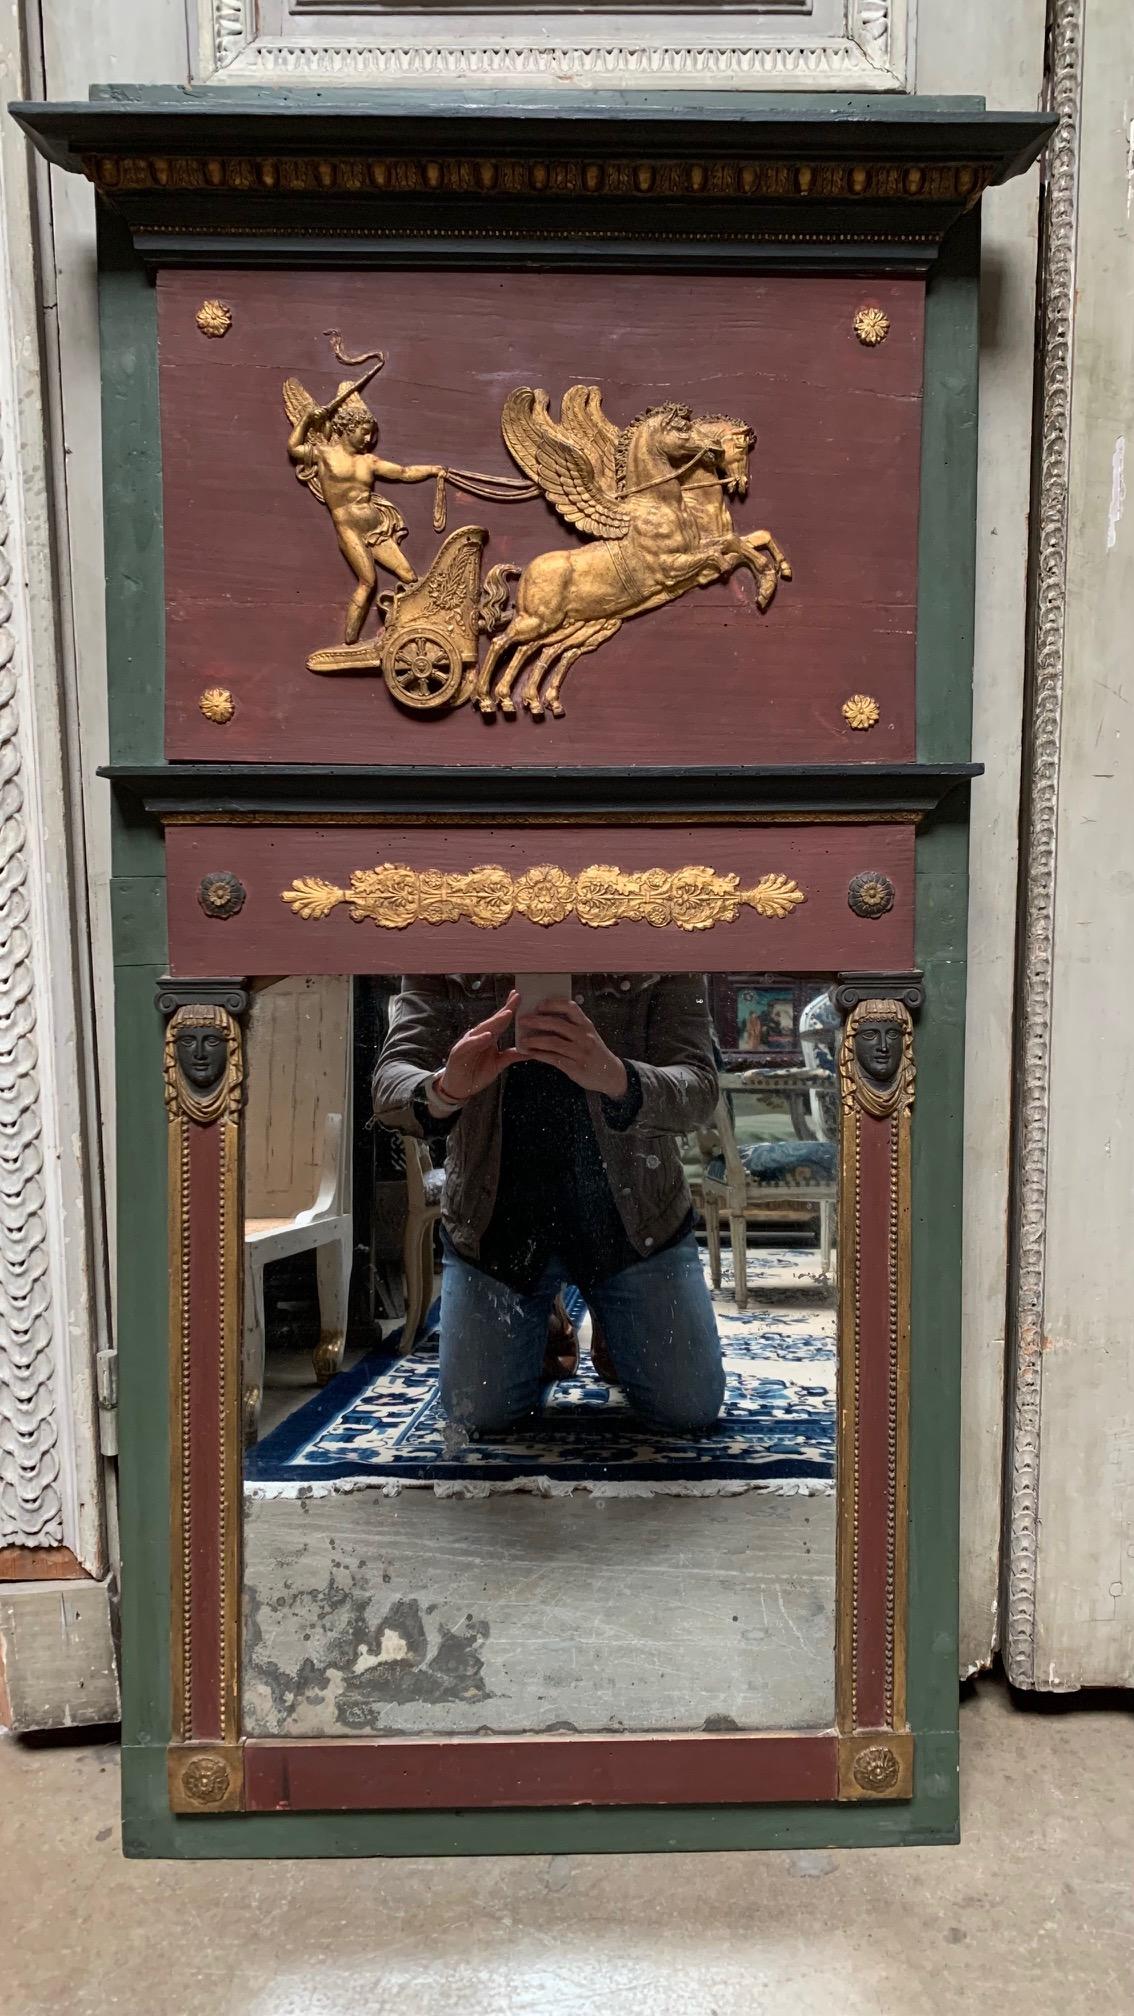 Kleiner französischer Directoire-Trumeau-Spiegel mit vergoldeter und bemalter grüner, violetter und goldener Oberfläche.  Dieser Spiegel im etruskischen Stil, die Darstellung von Phaedrus ist ein lovey Größe und hat eine wunderbare alte Patina und